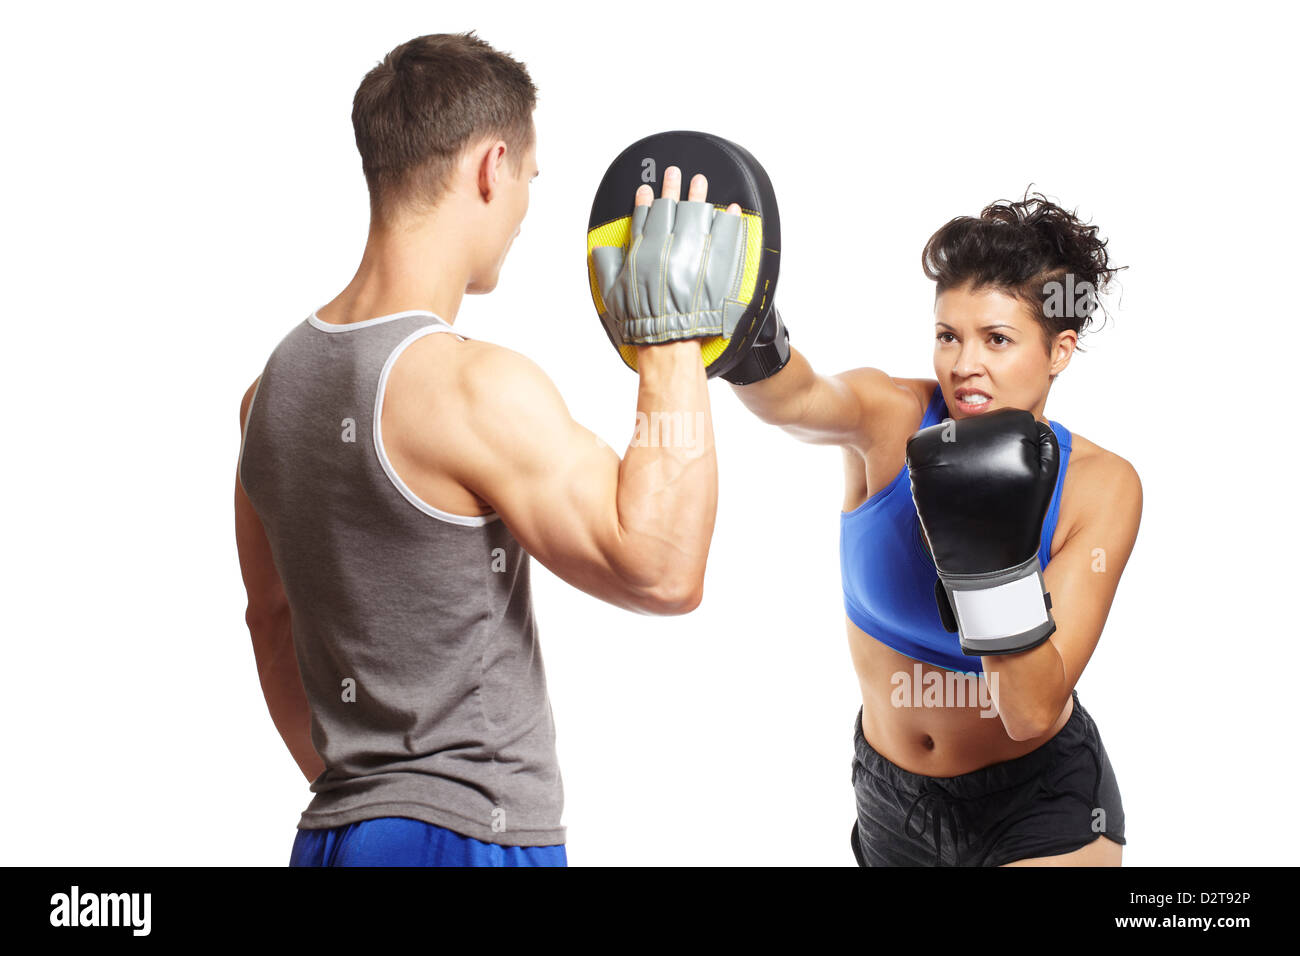 Jeune homme et femme dans des tenues de sport de combat de boxe sur fond blanc Banque D'Images